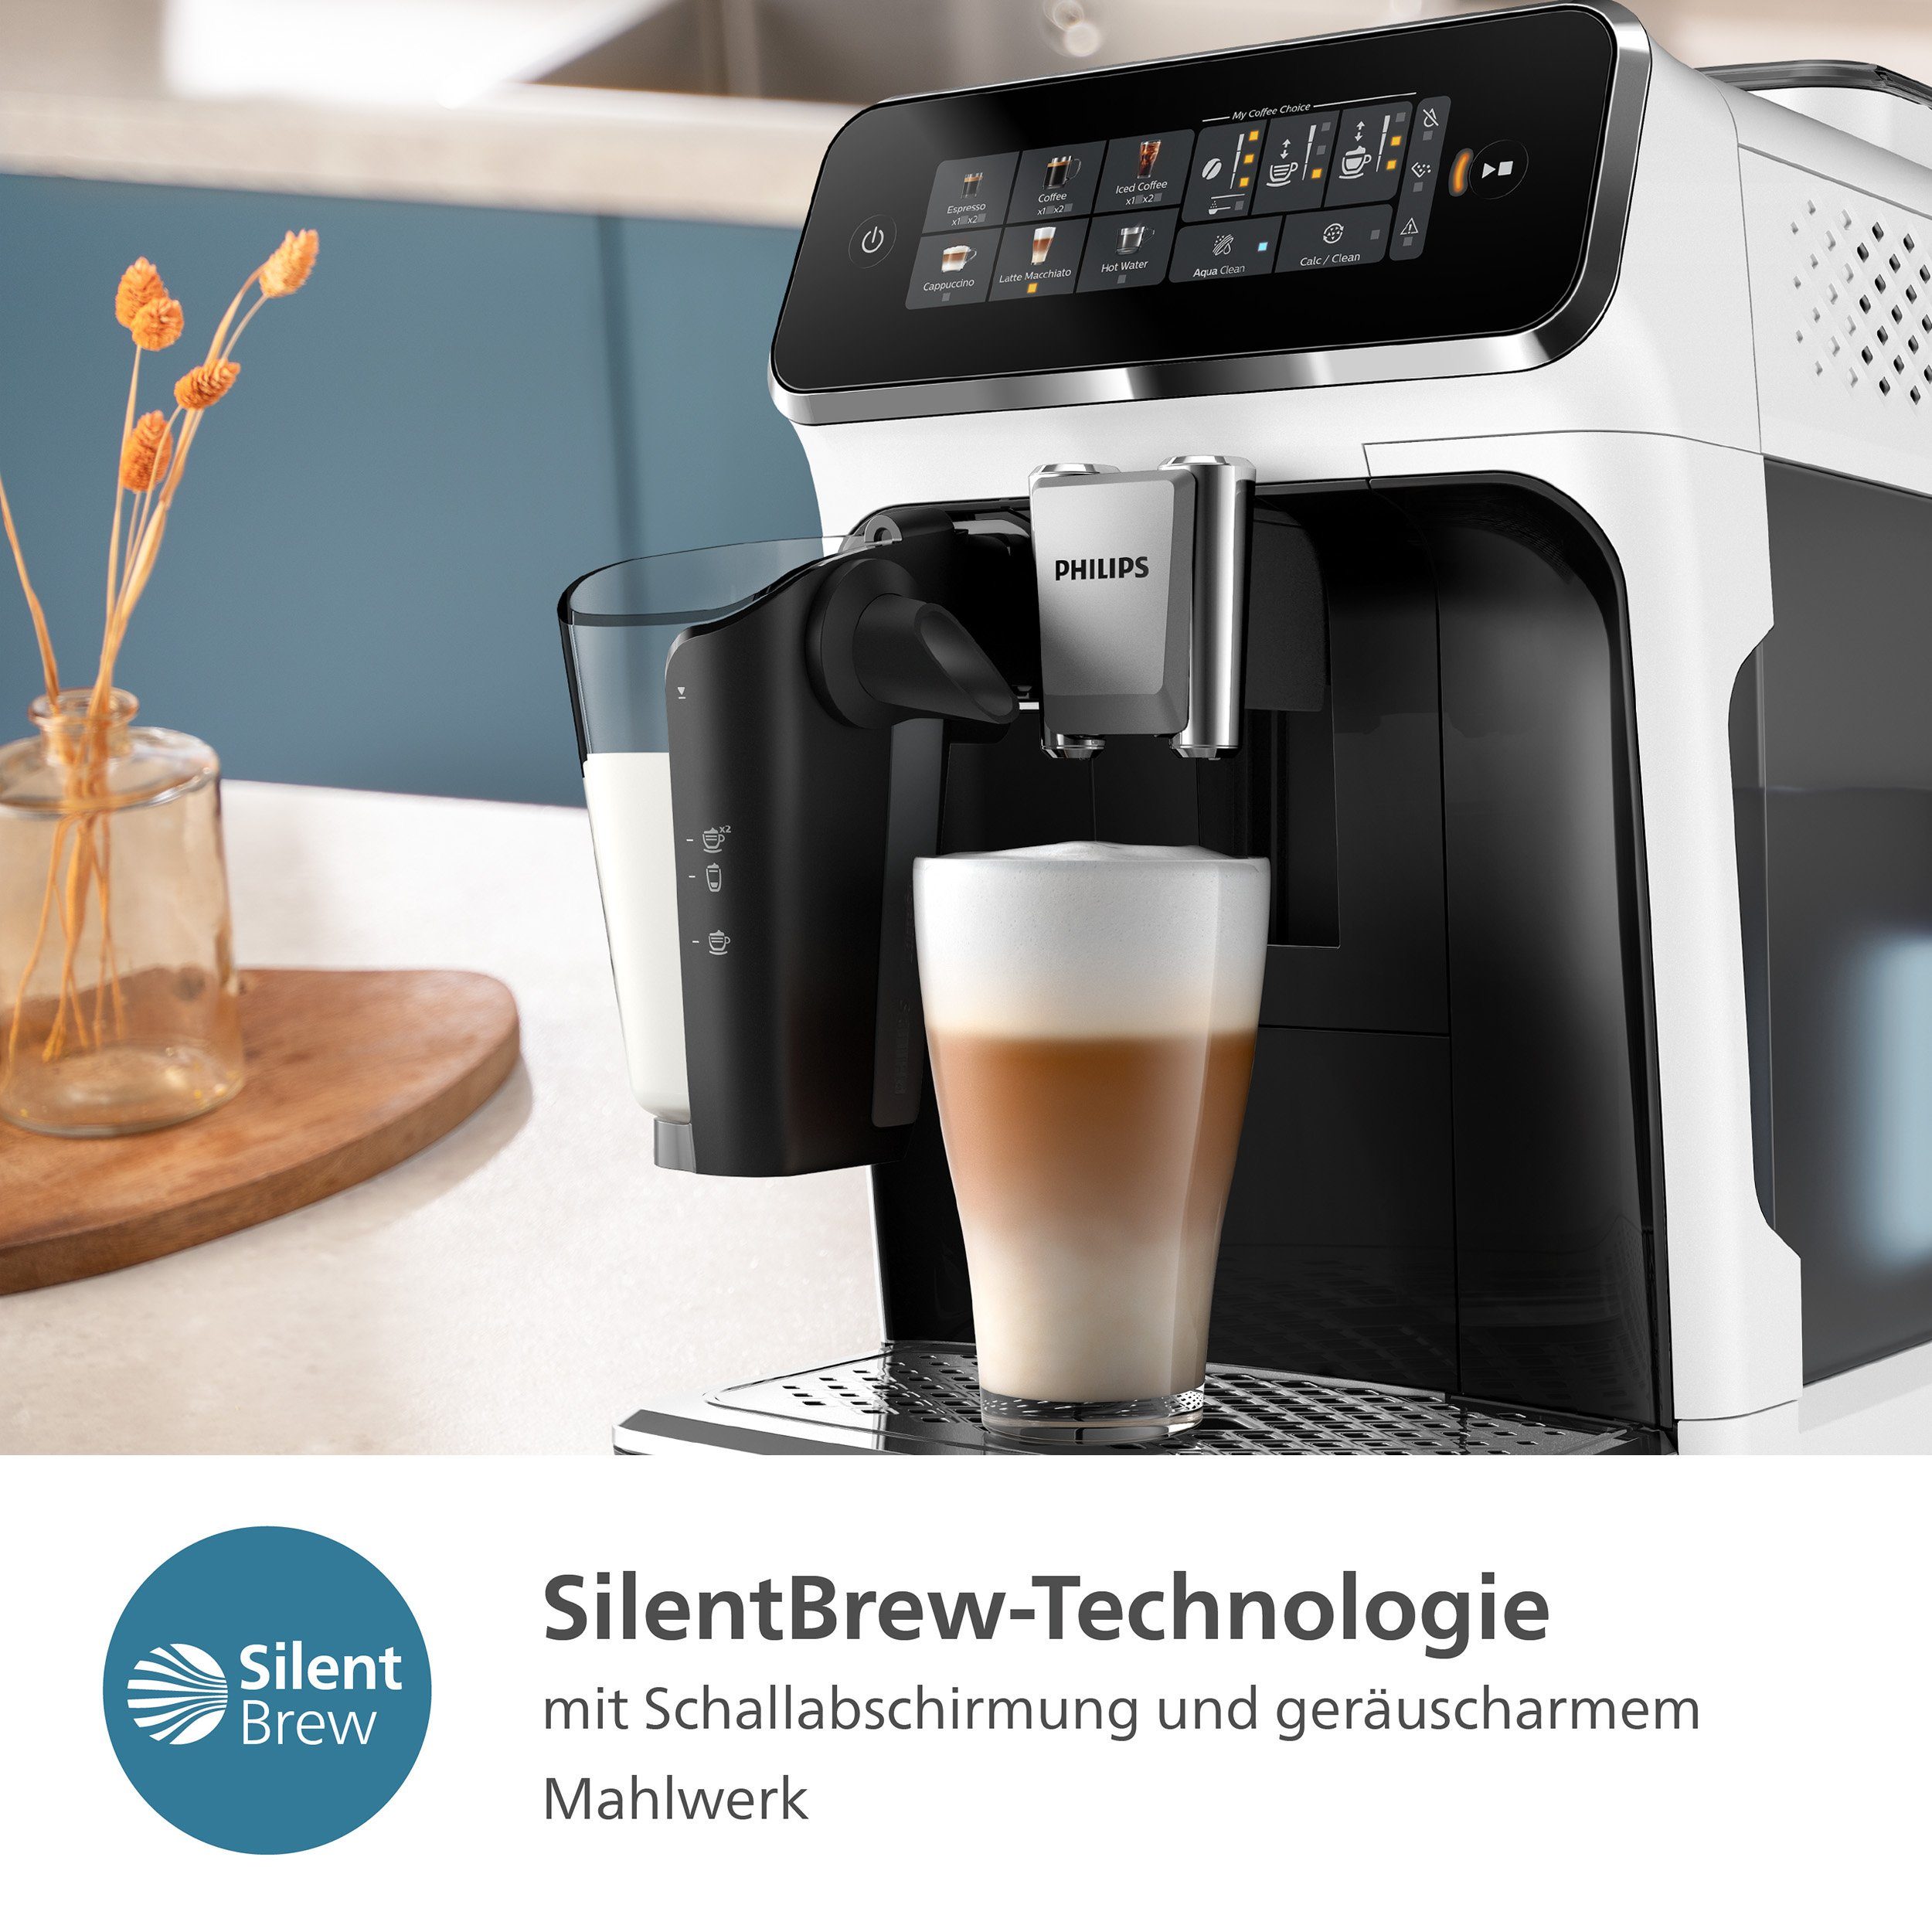 Kaffeevollautomat Weiß/Schwarz 3300 LatteGo-Milchsystem, mit Series, EP3343/50 6 Philips Kaffeespezialitäten,